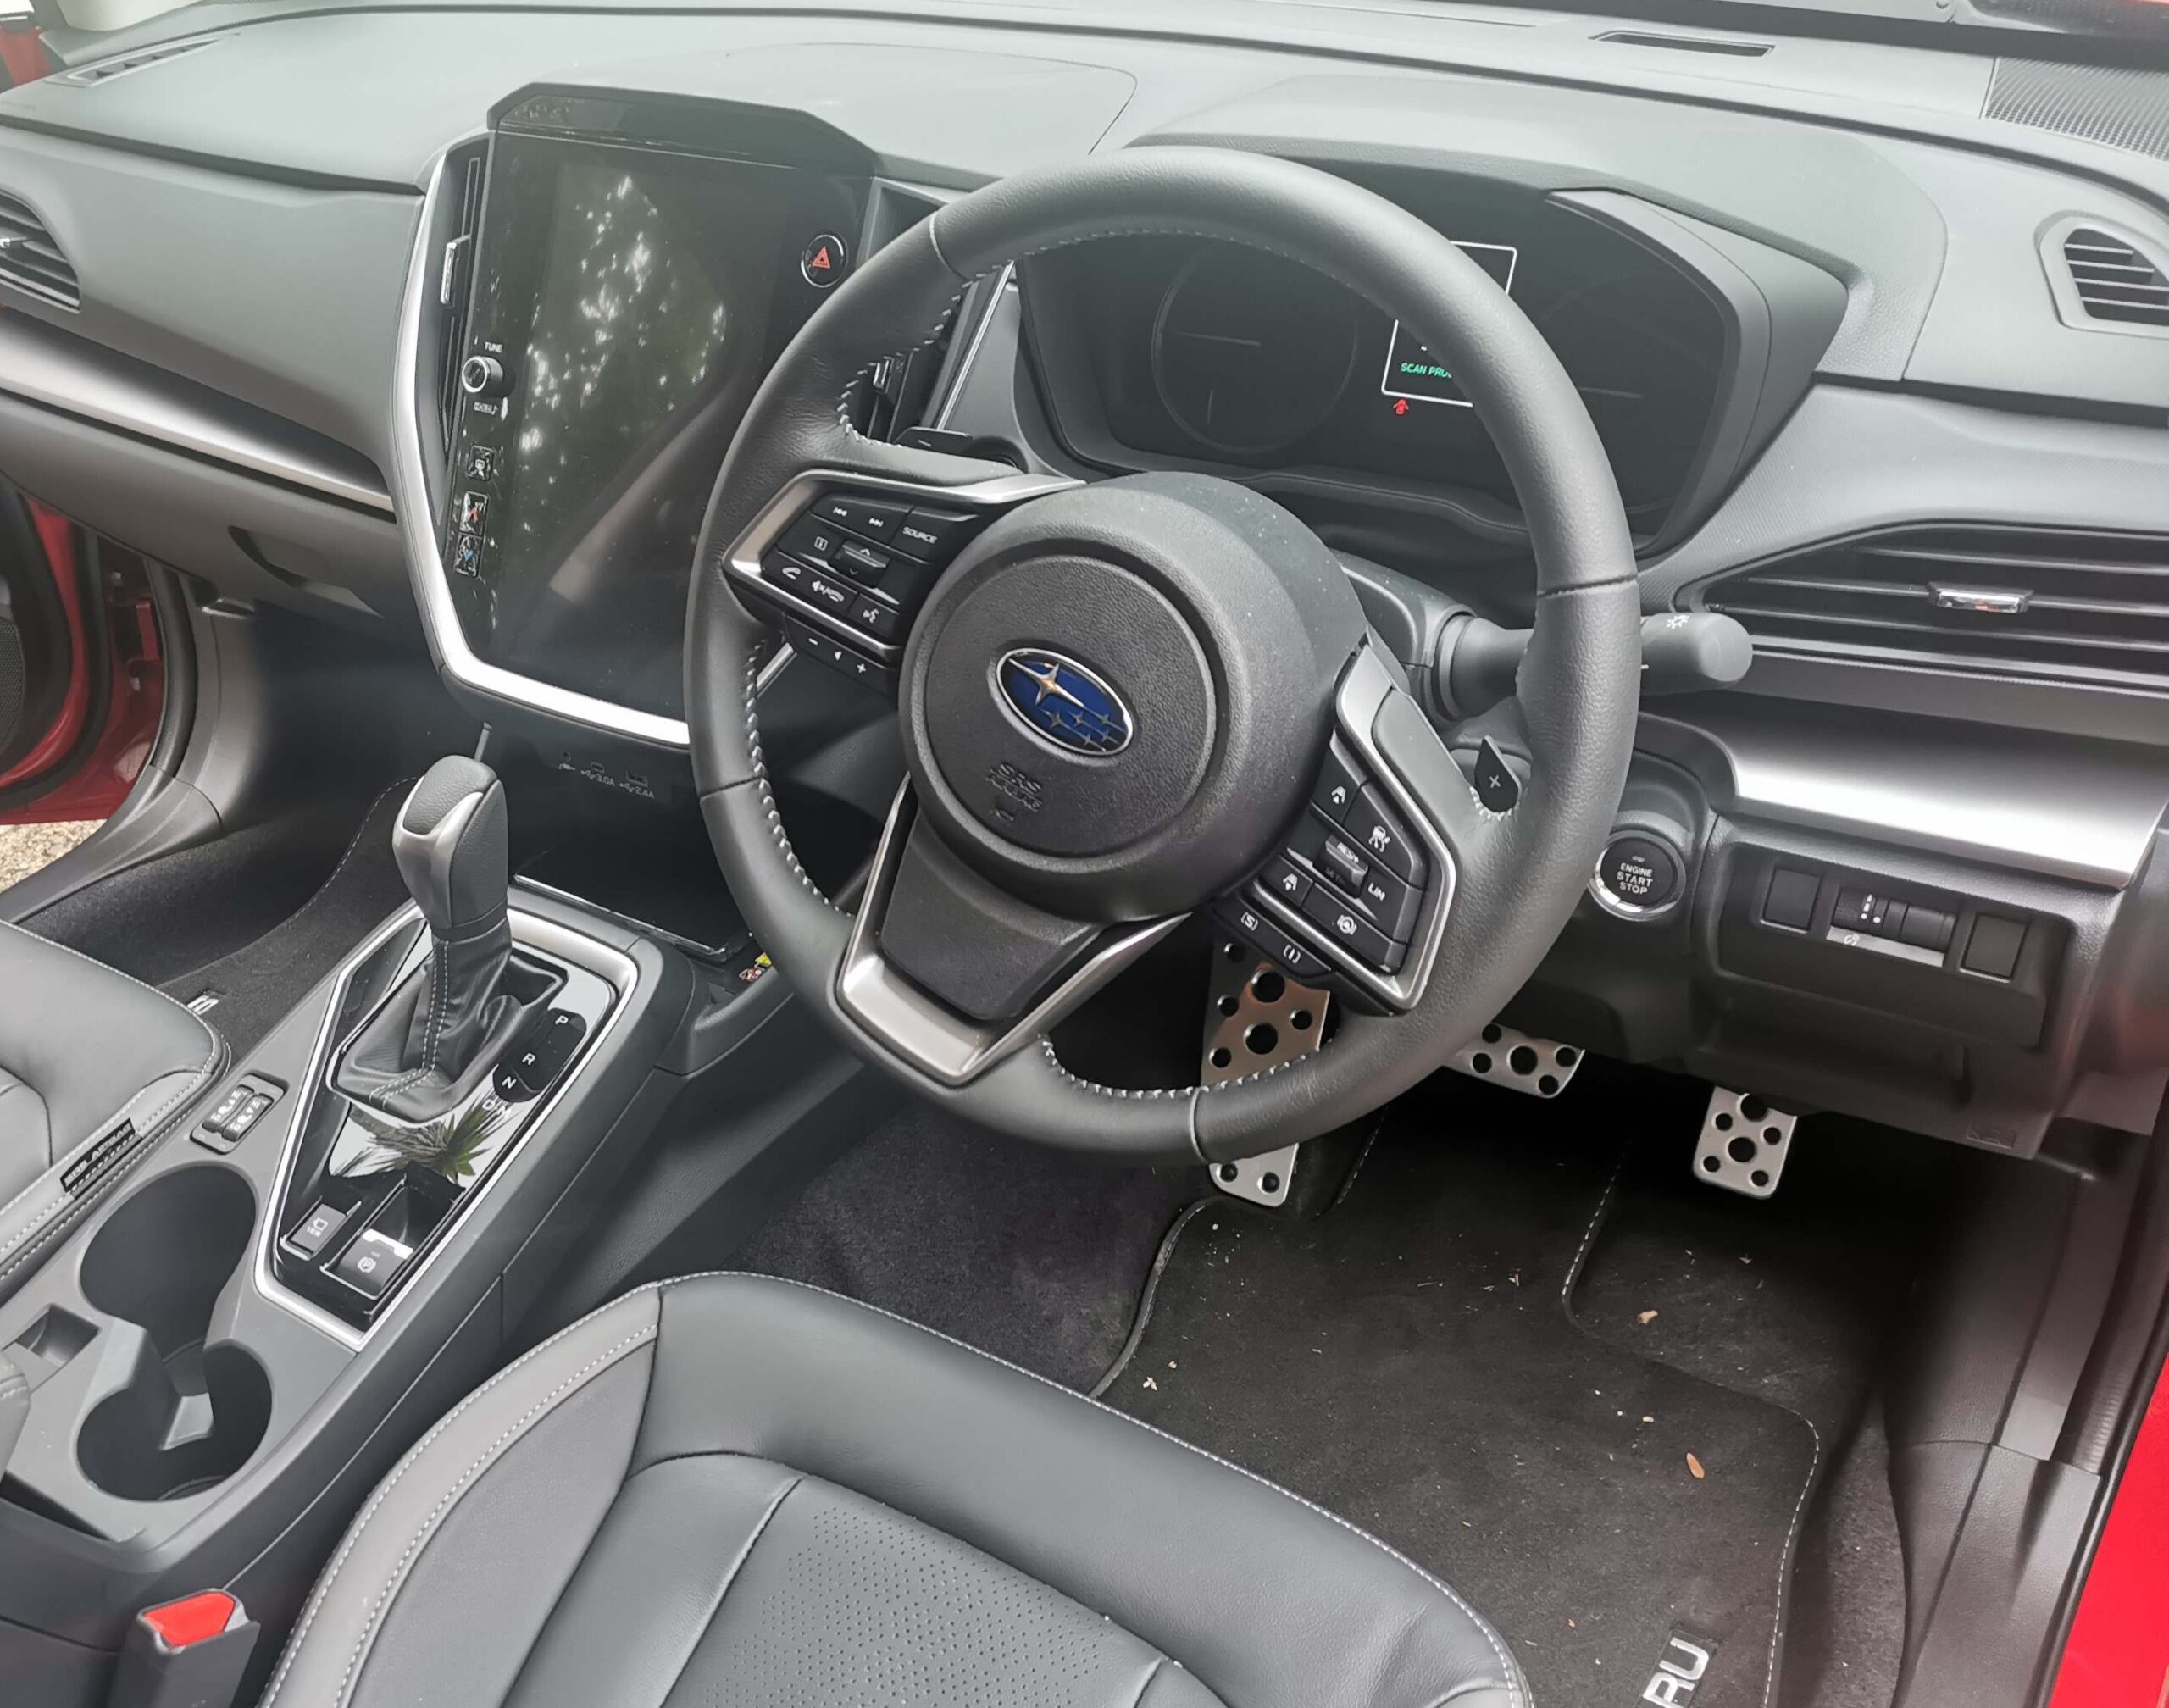 New Subaru Impreza review NZ